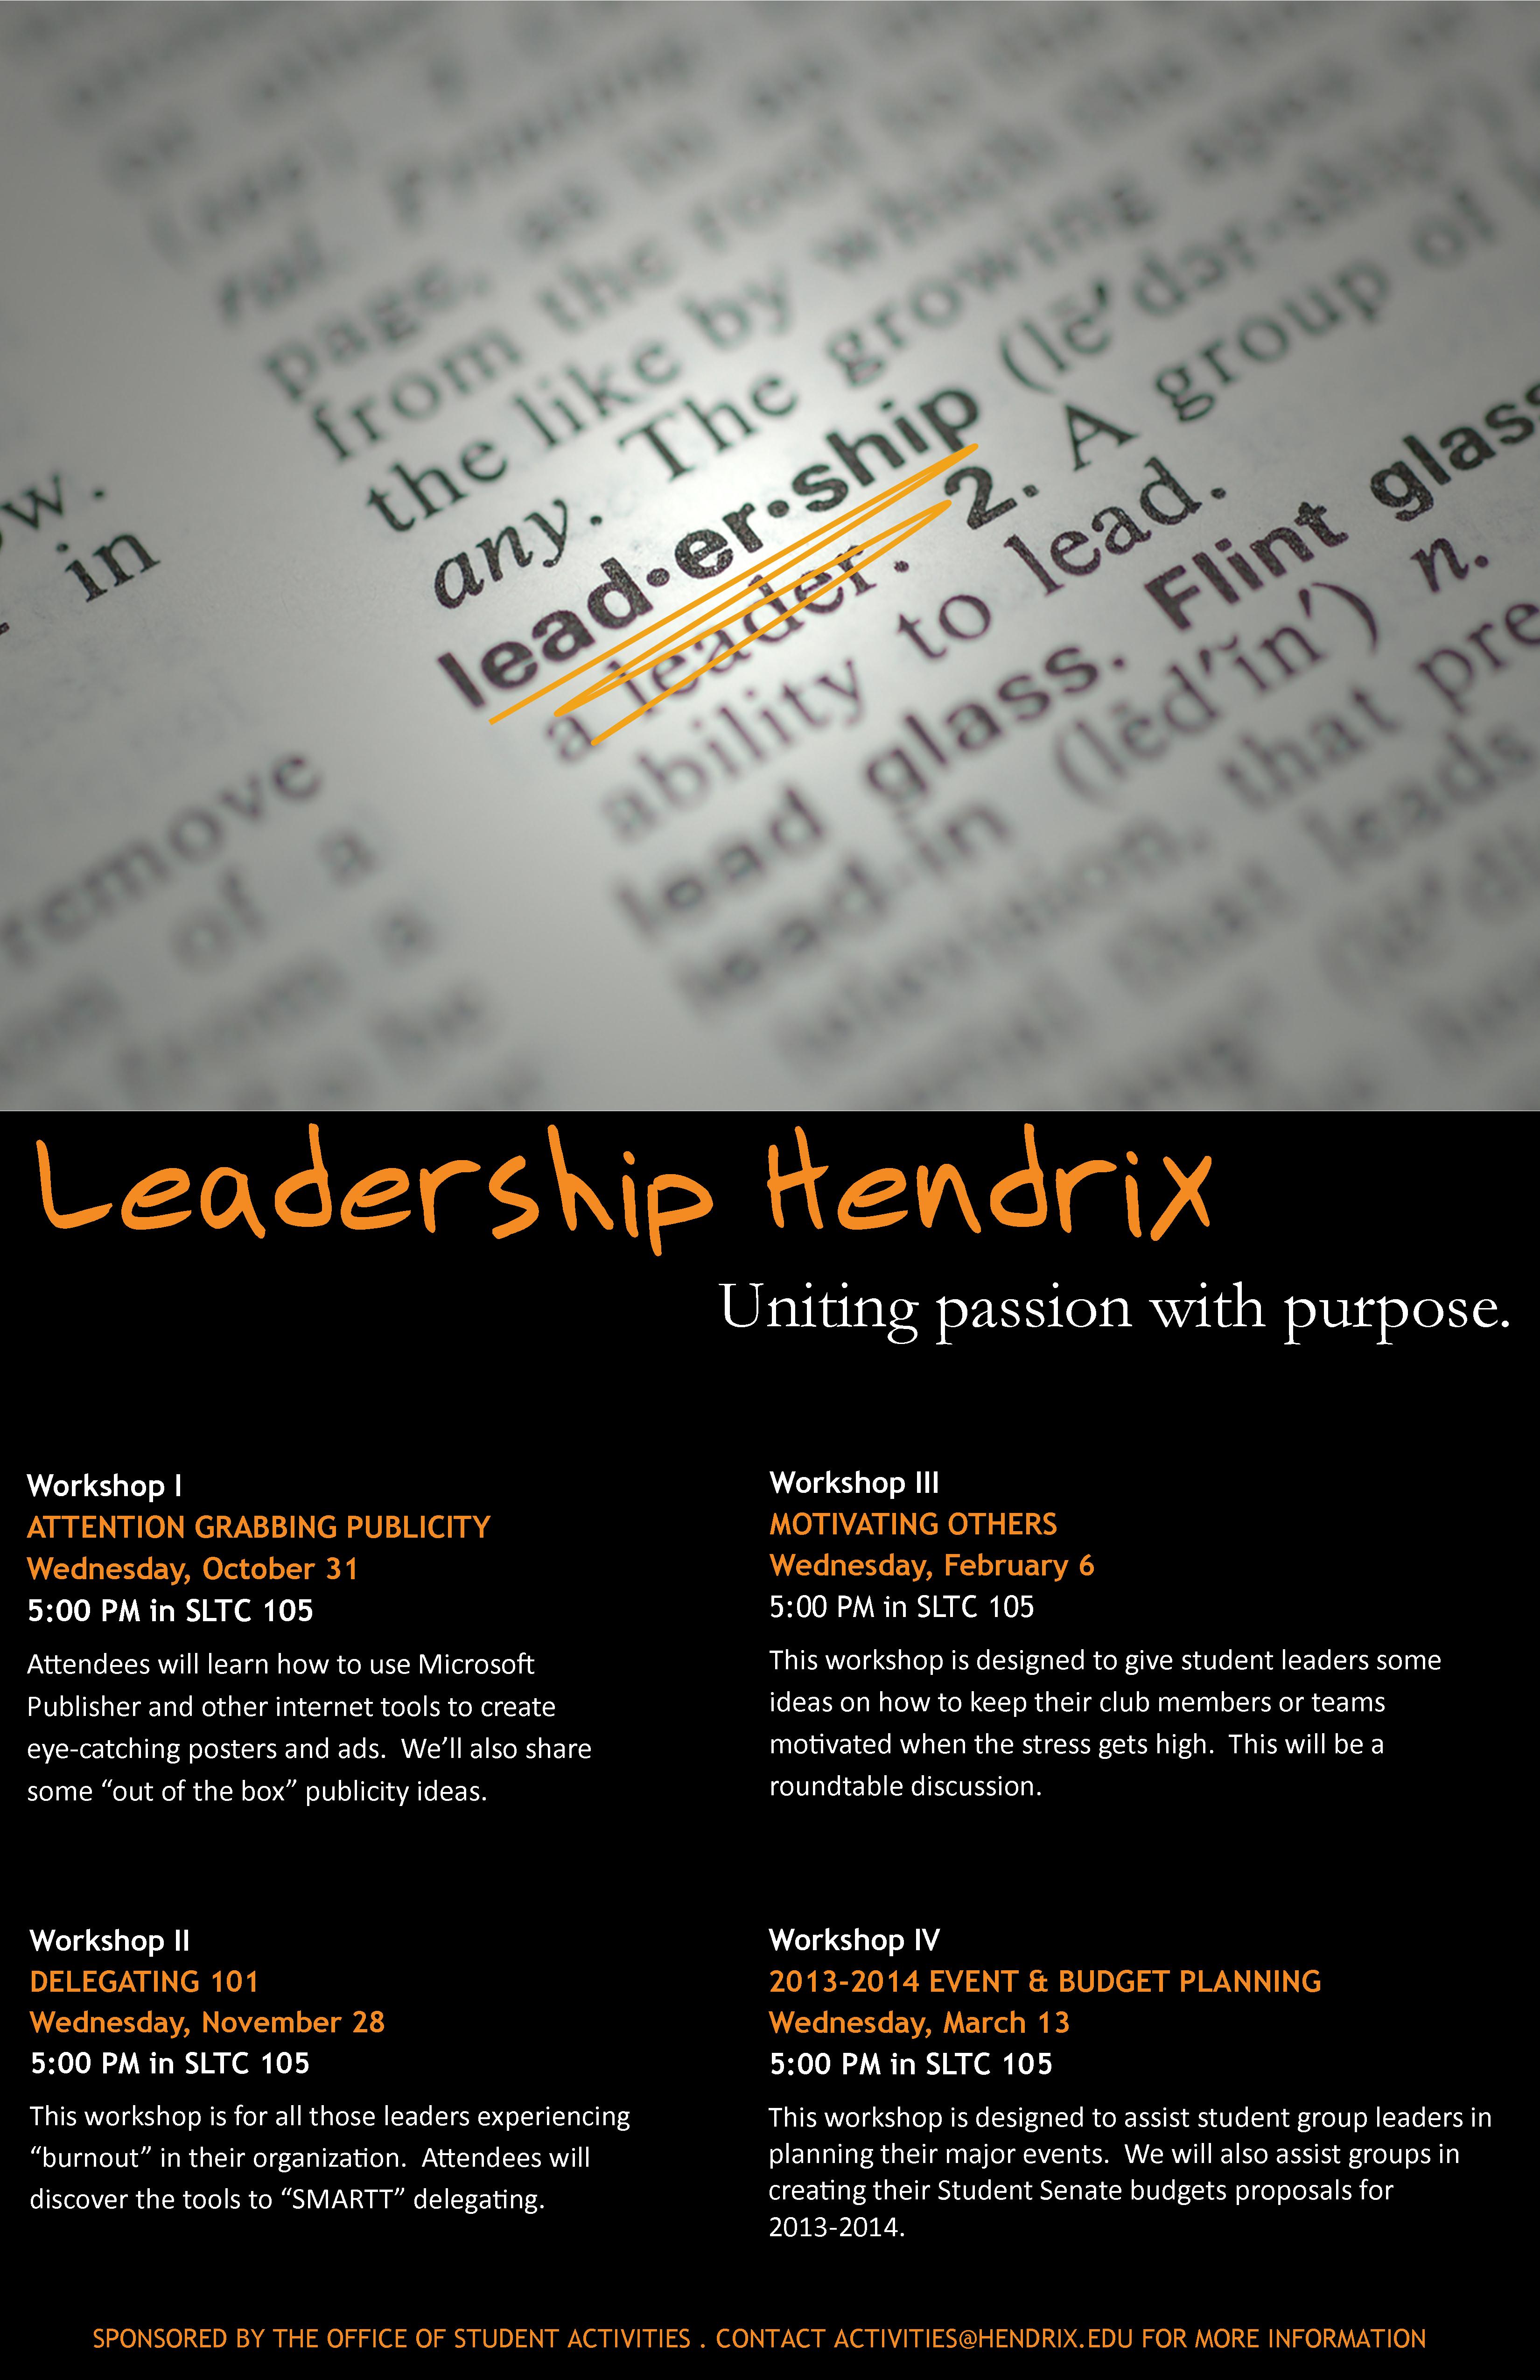 Leadership Hendrix 2012-2013